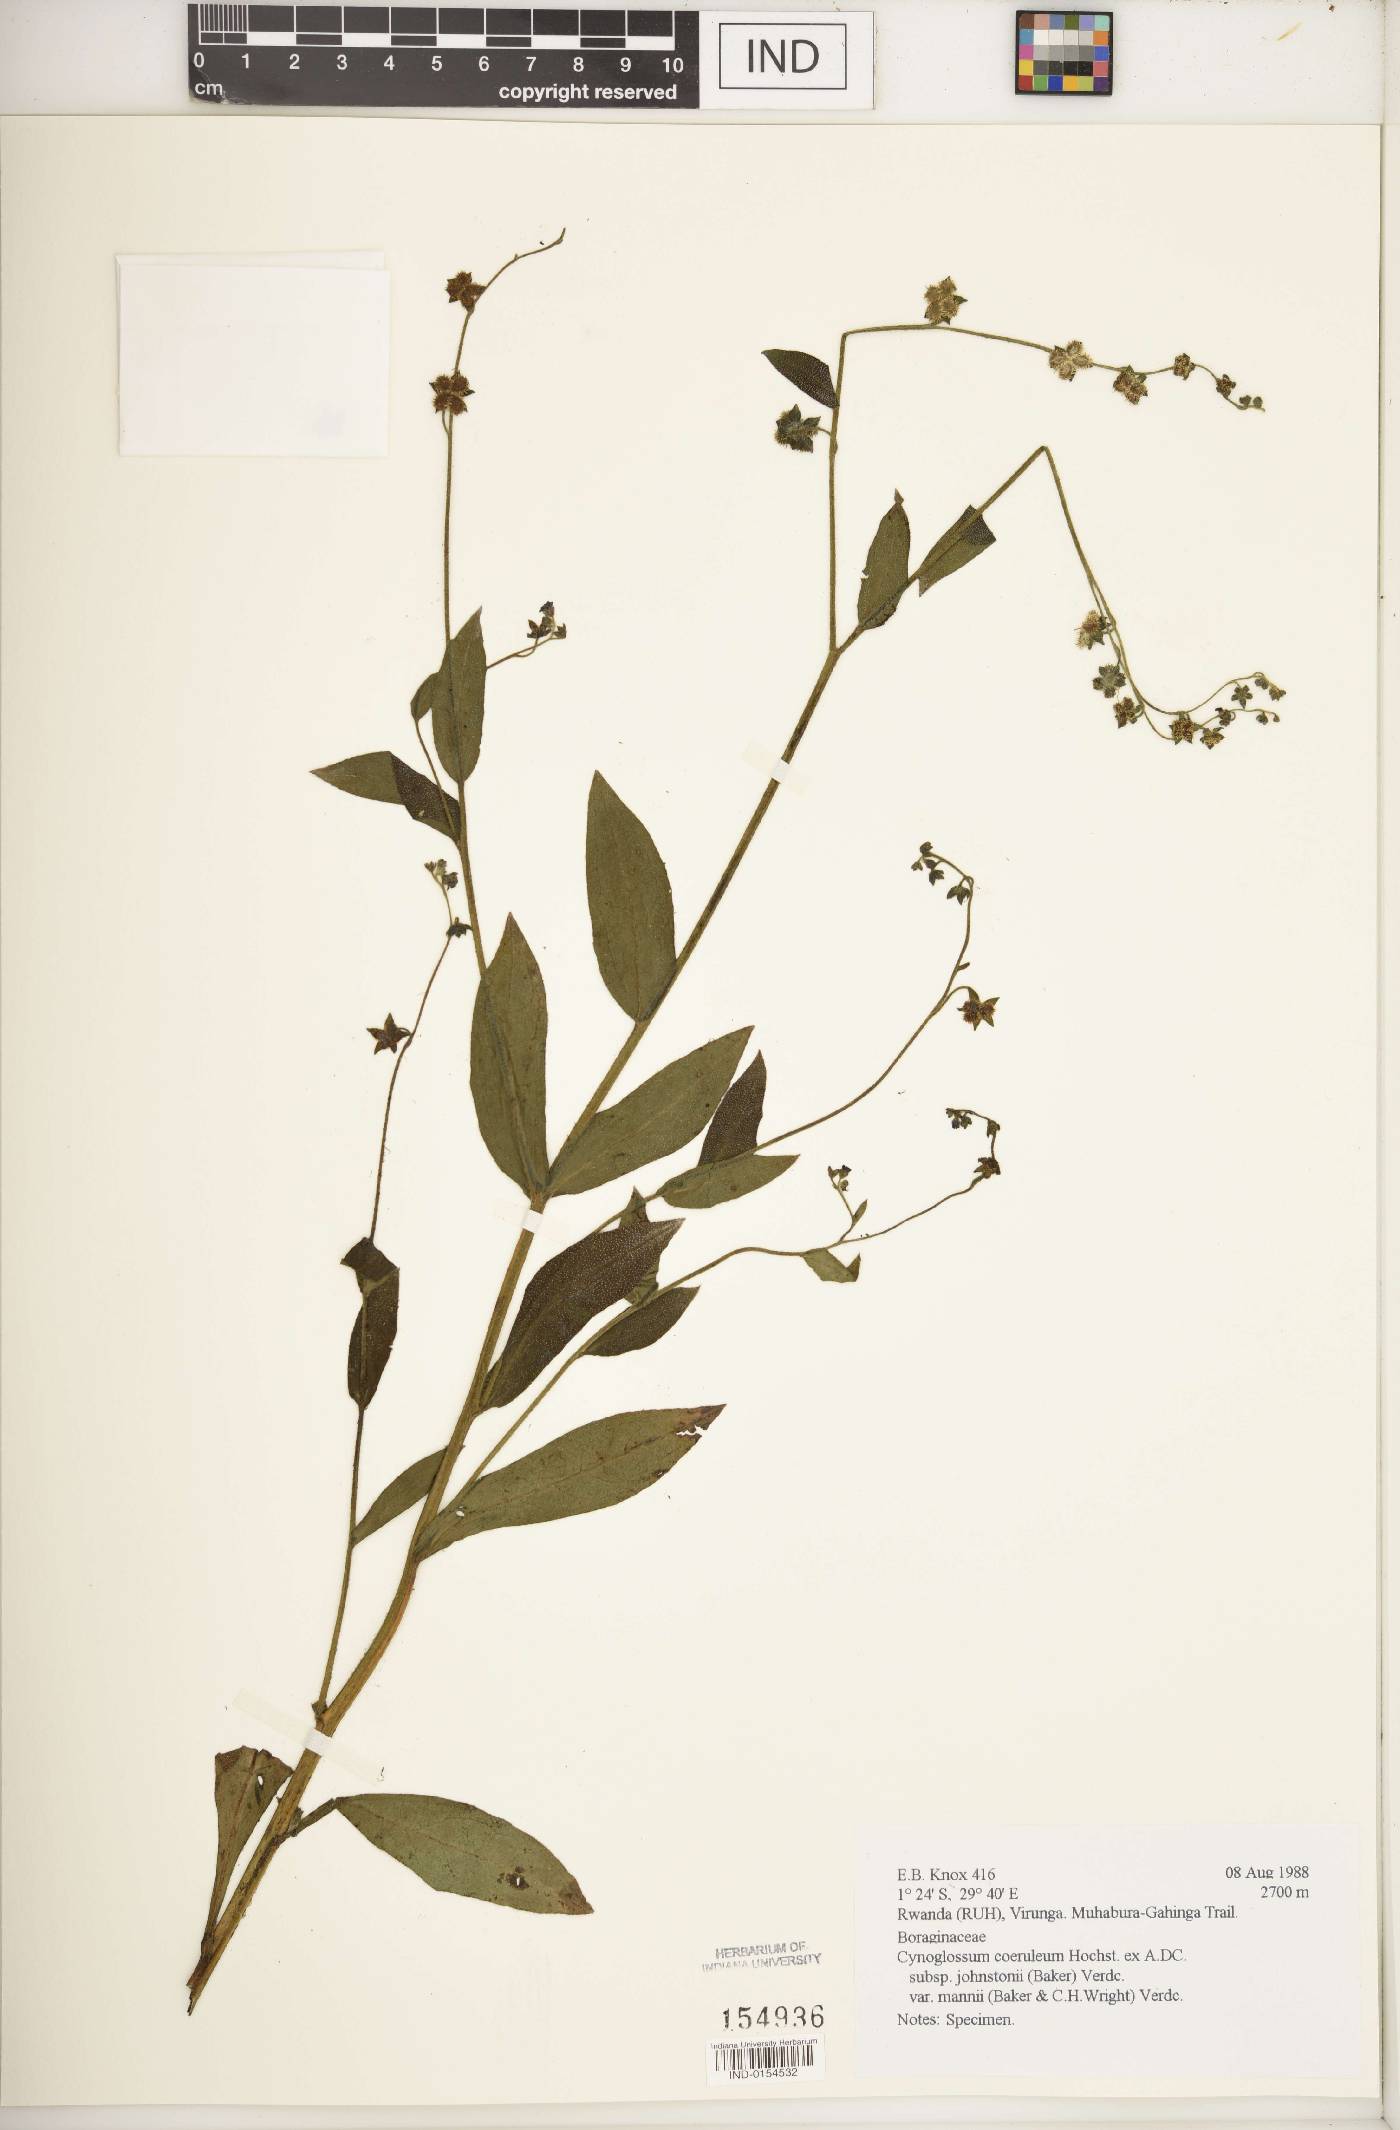 Cynoglossum coeruleum subsp. johnstonii image